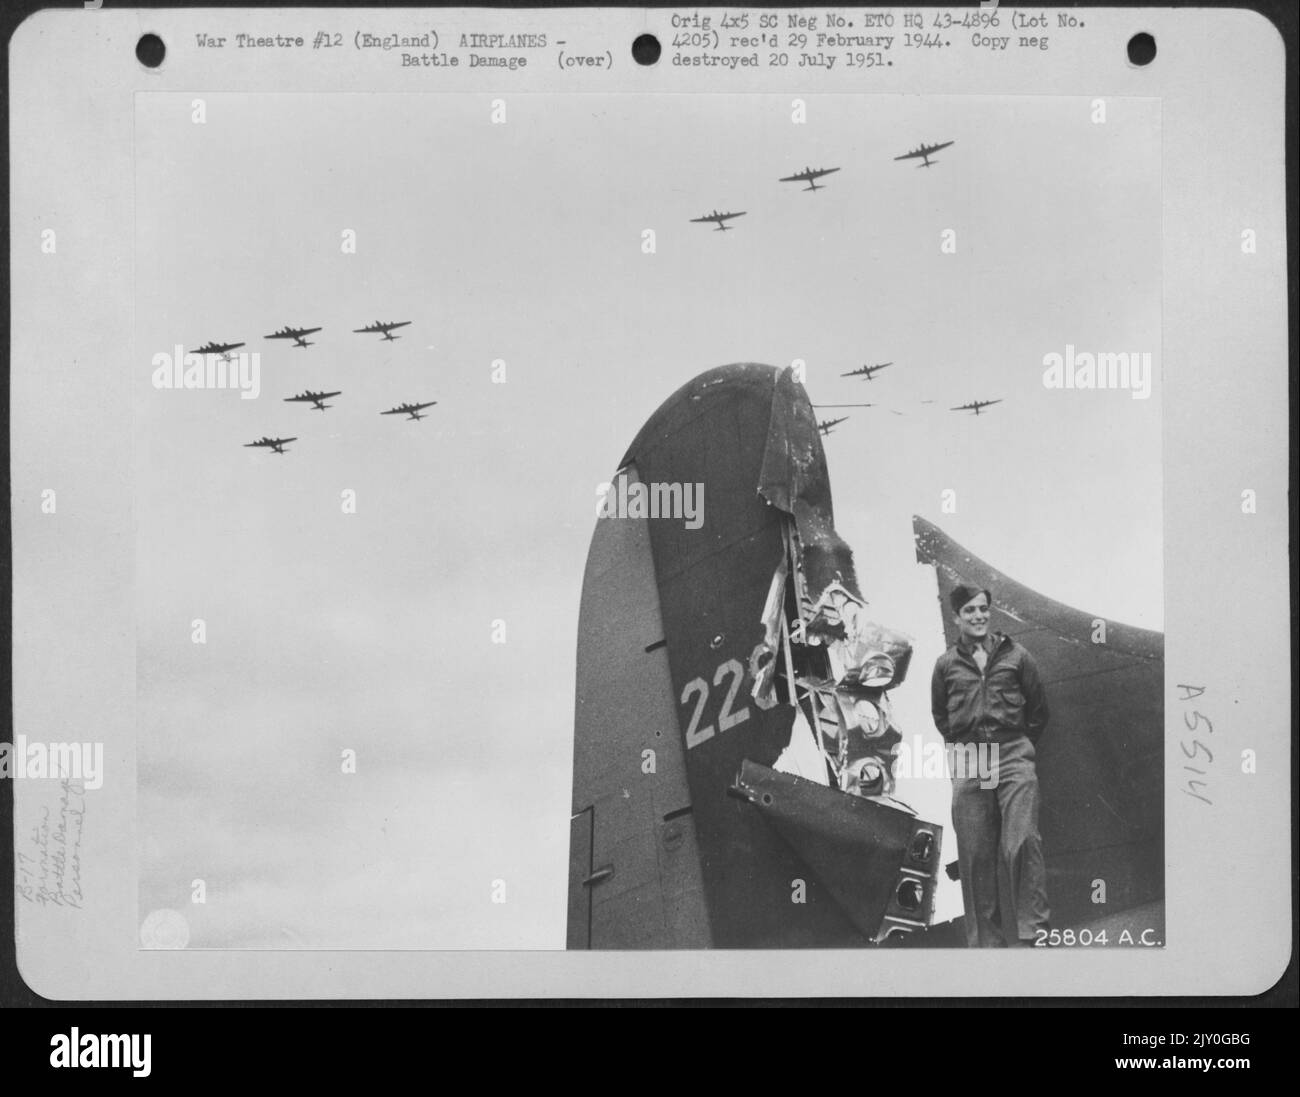 T/Sgt. Harris Goldberg di Brookline, Mass., Boeing B-17 codone, si trova accanto alla coda del suo aereo che è stato colpito da un fuoco di cannone di 20 mm. Durante una missione sul territorio nemico. Una formazione del Boeing B-17s può essere vista volare sopra. Thurleigh Foto Stock